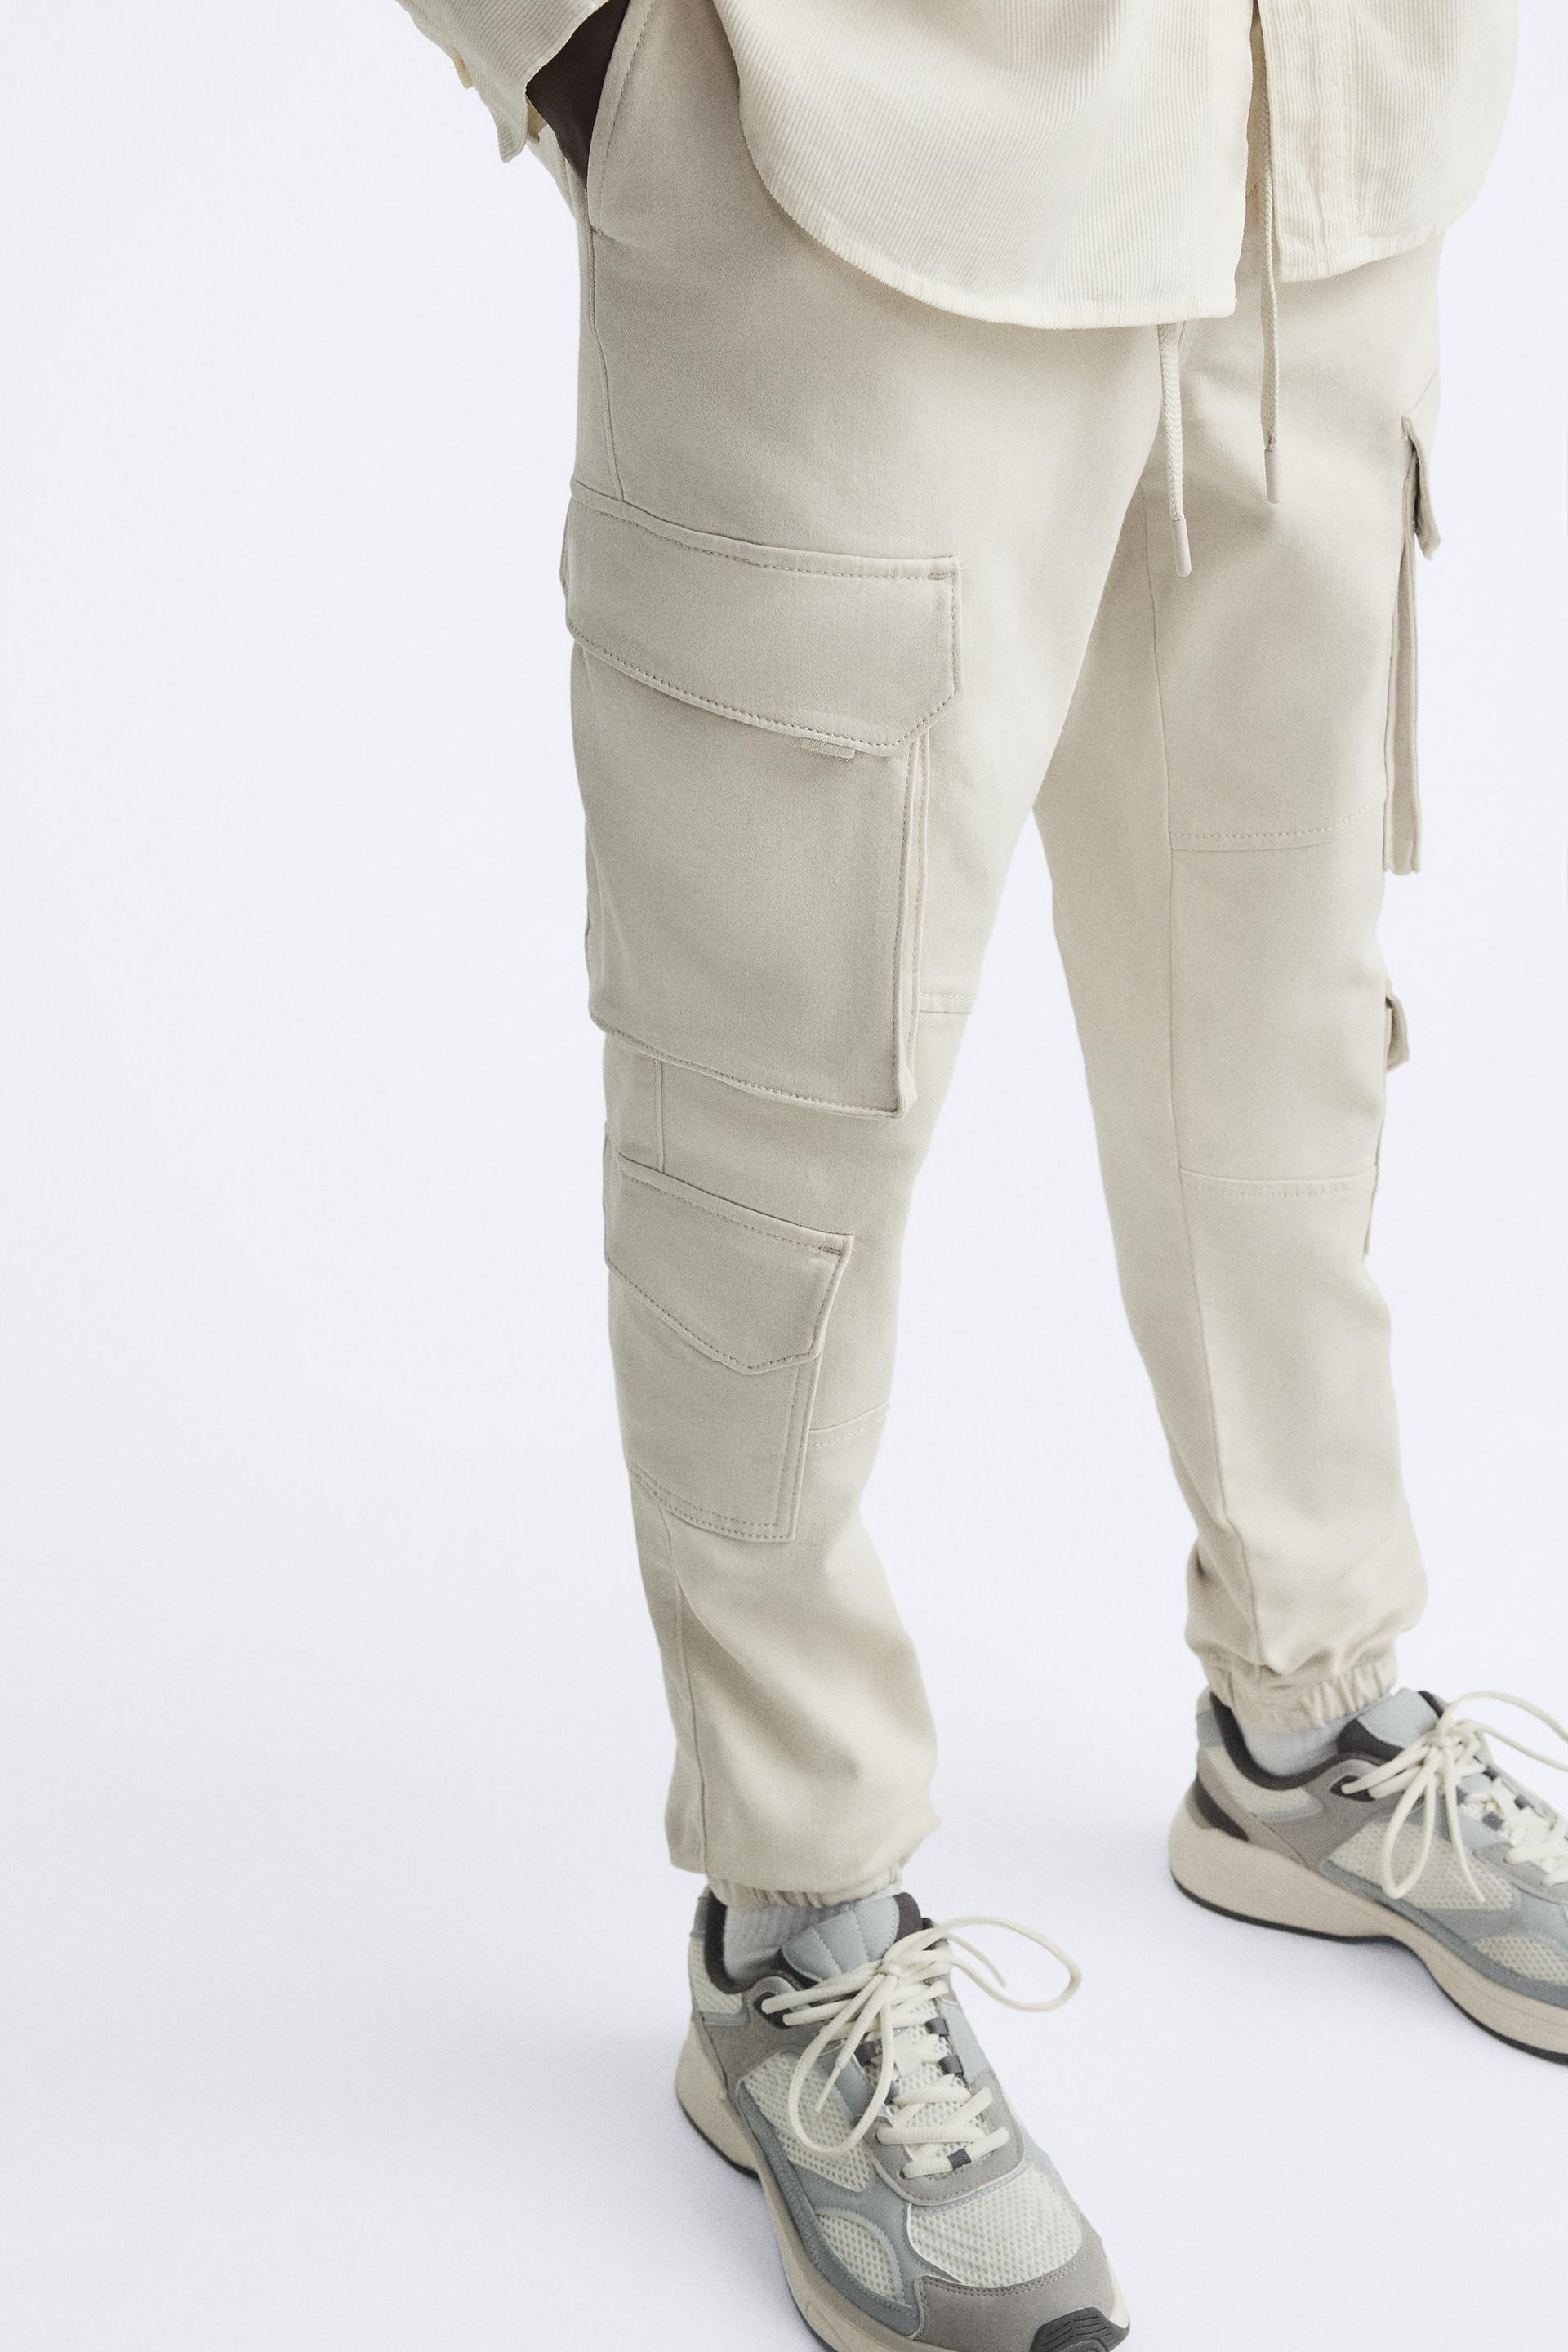 Pantalón cargo hombre beige UPF50 - Jeans y Pantalones